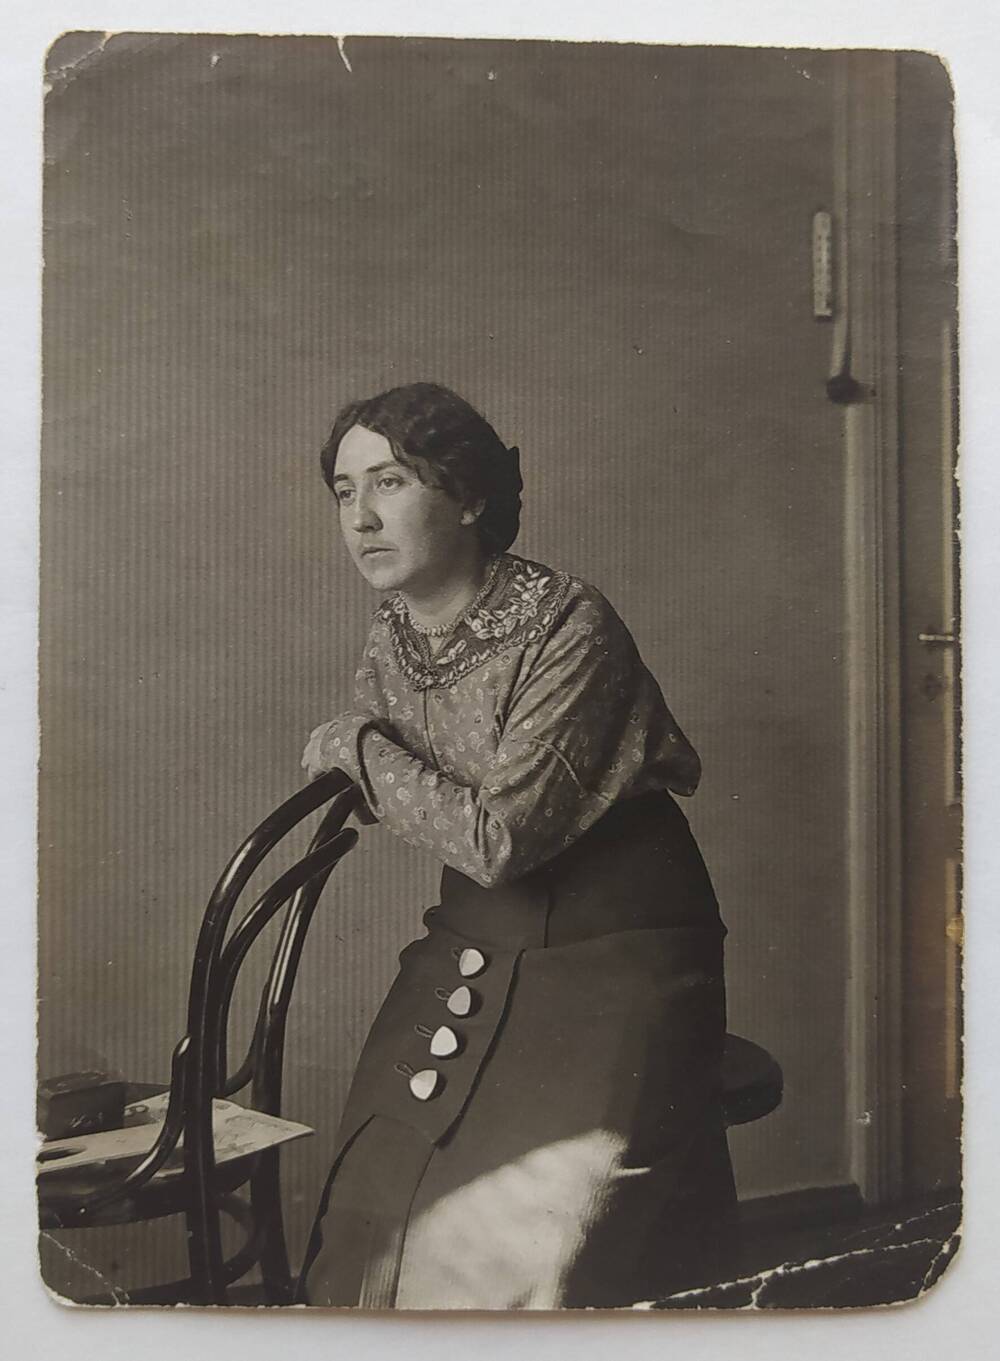 Фотография черно-белая с изображением жены А.П. Бибика - З.И. Бибик, которая сидит на табурете, облокотившись на спинку венского стула.